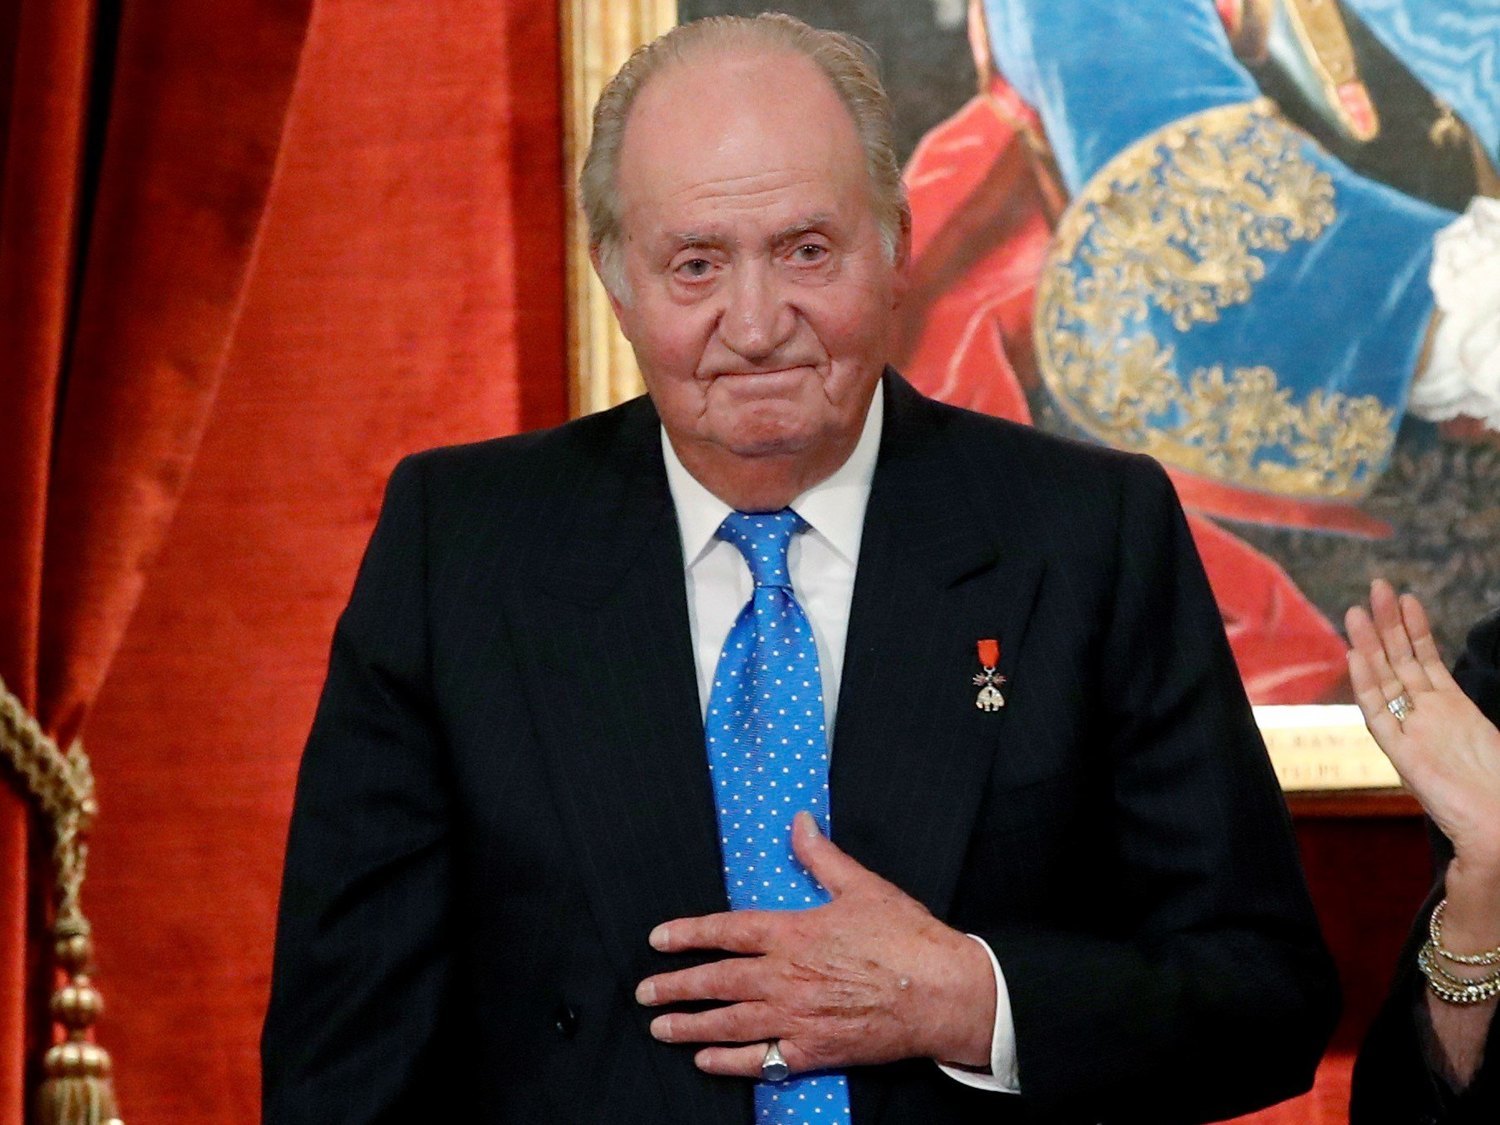 El Gobierno mantendrá con carácter vitalicio el título de rey para Juan Carlos I a pesar de sus escándalos